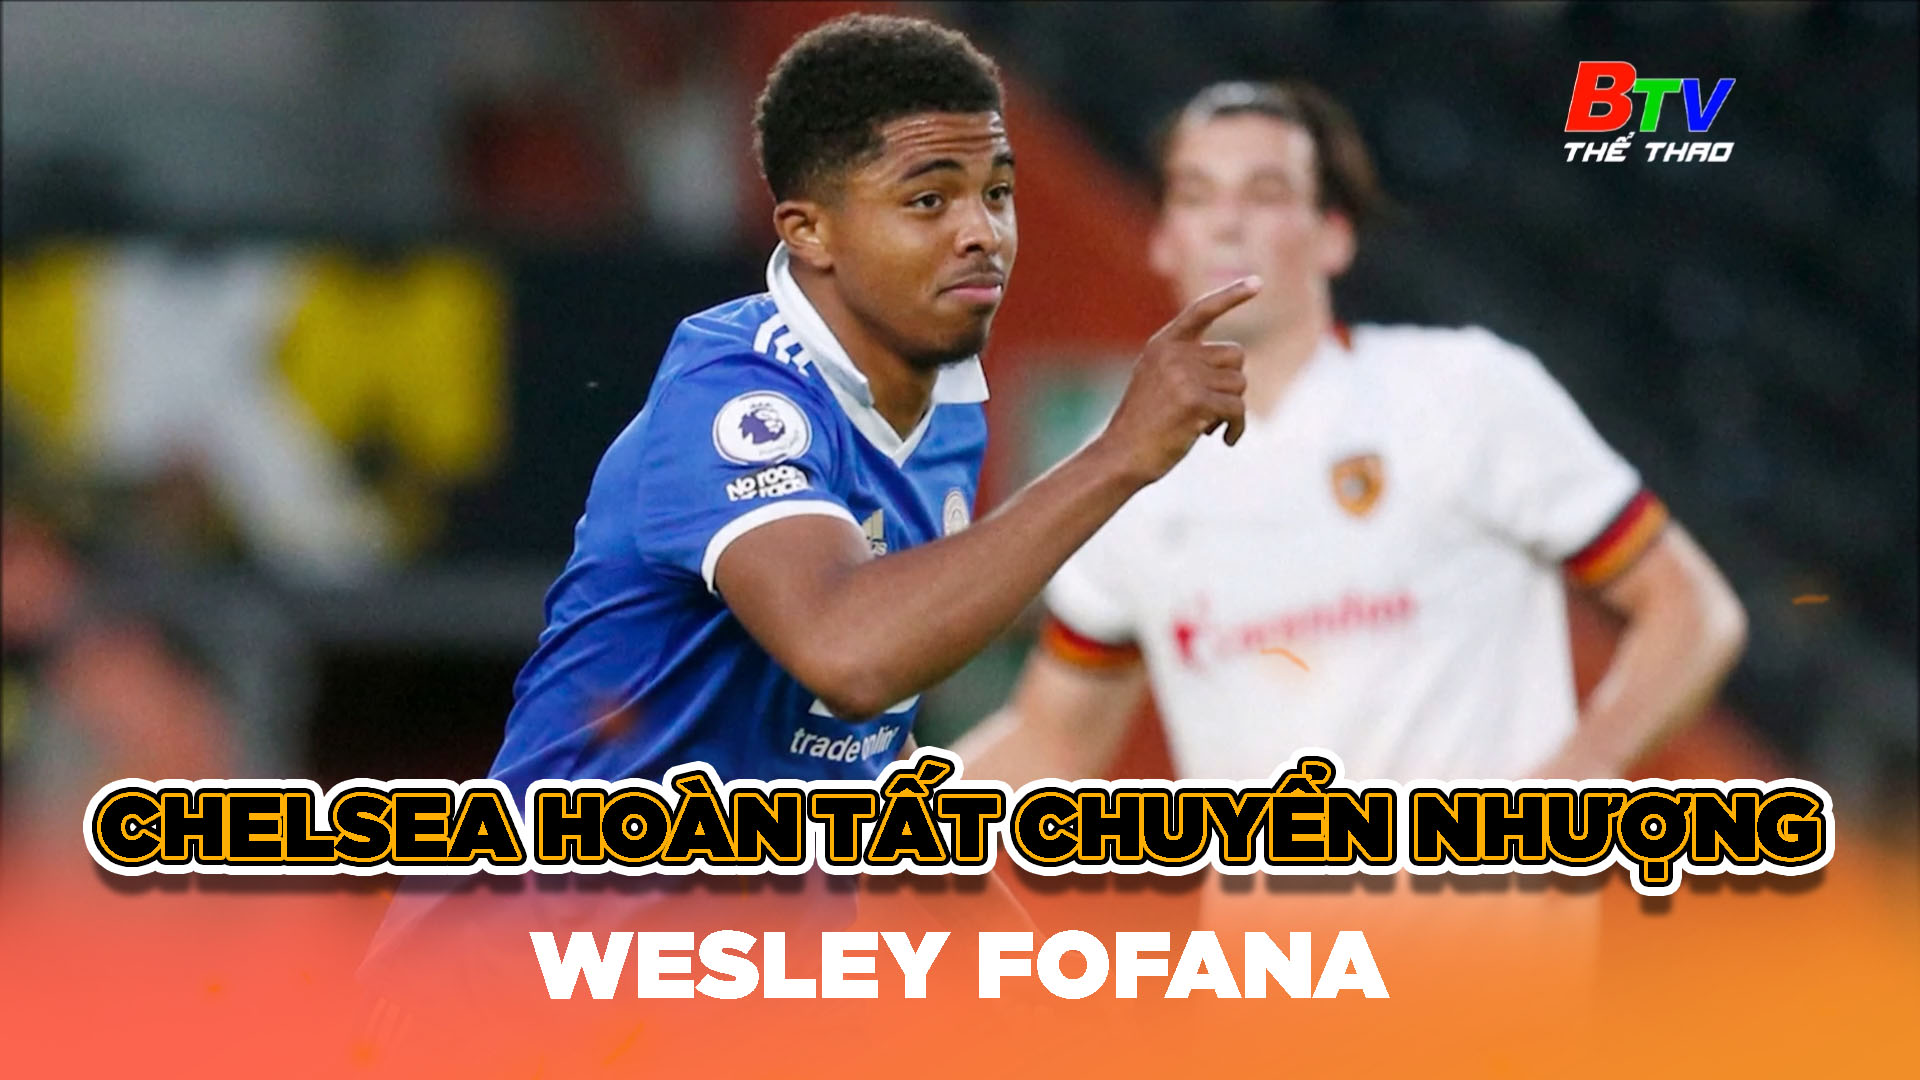 Chelsea hoàn tất chuyển nhượng Wesley Fofana